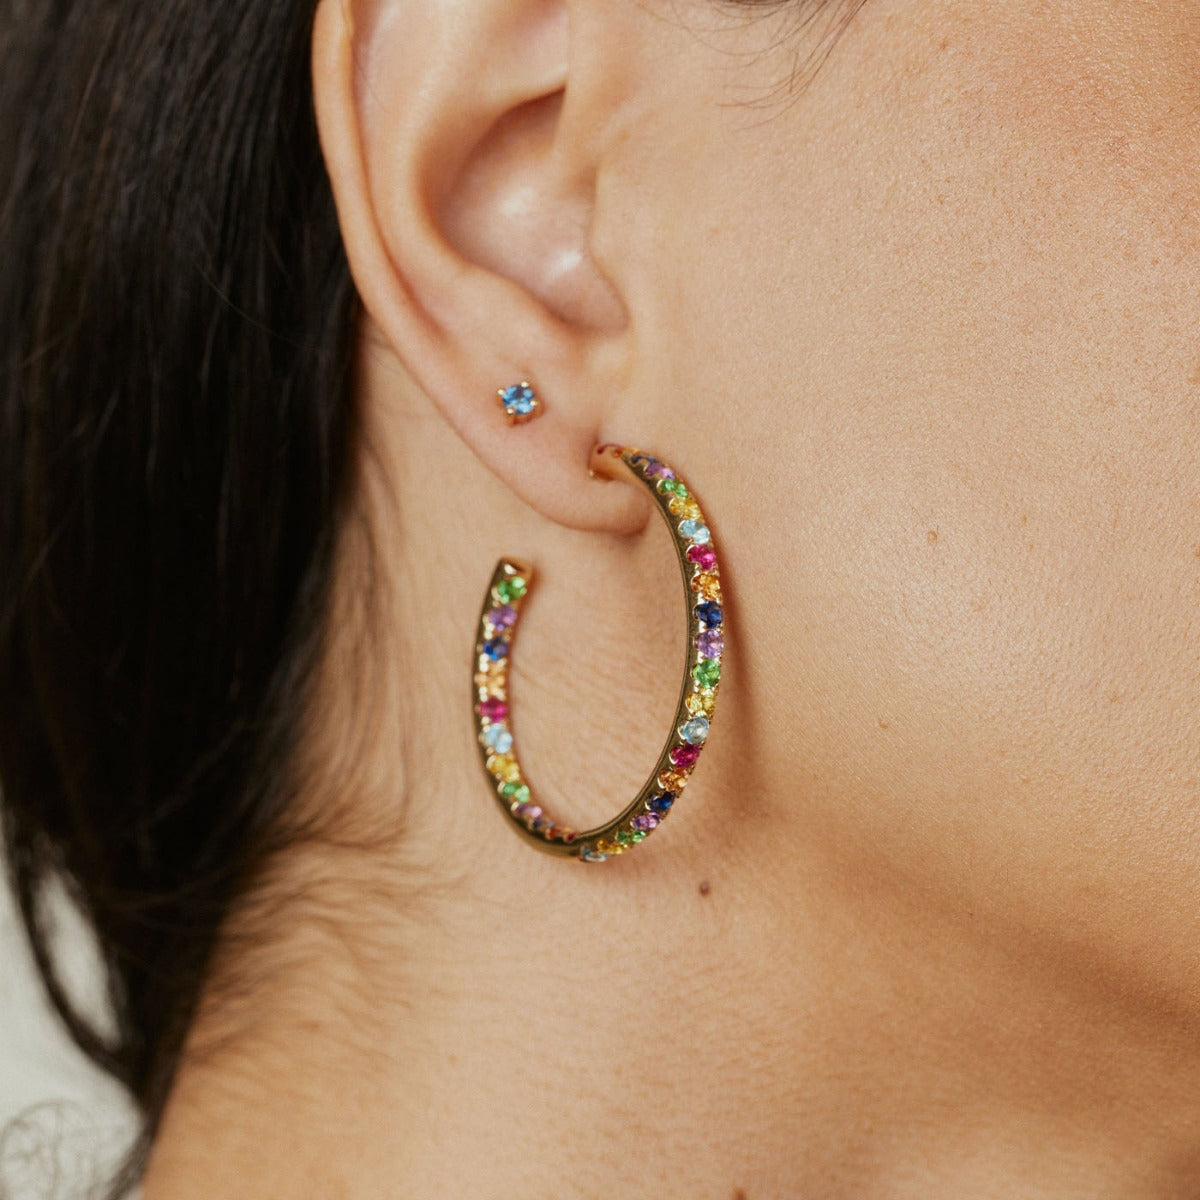 Gemstone Hoop Earrings – Forever Today by Jilco